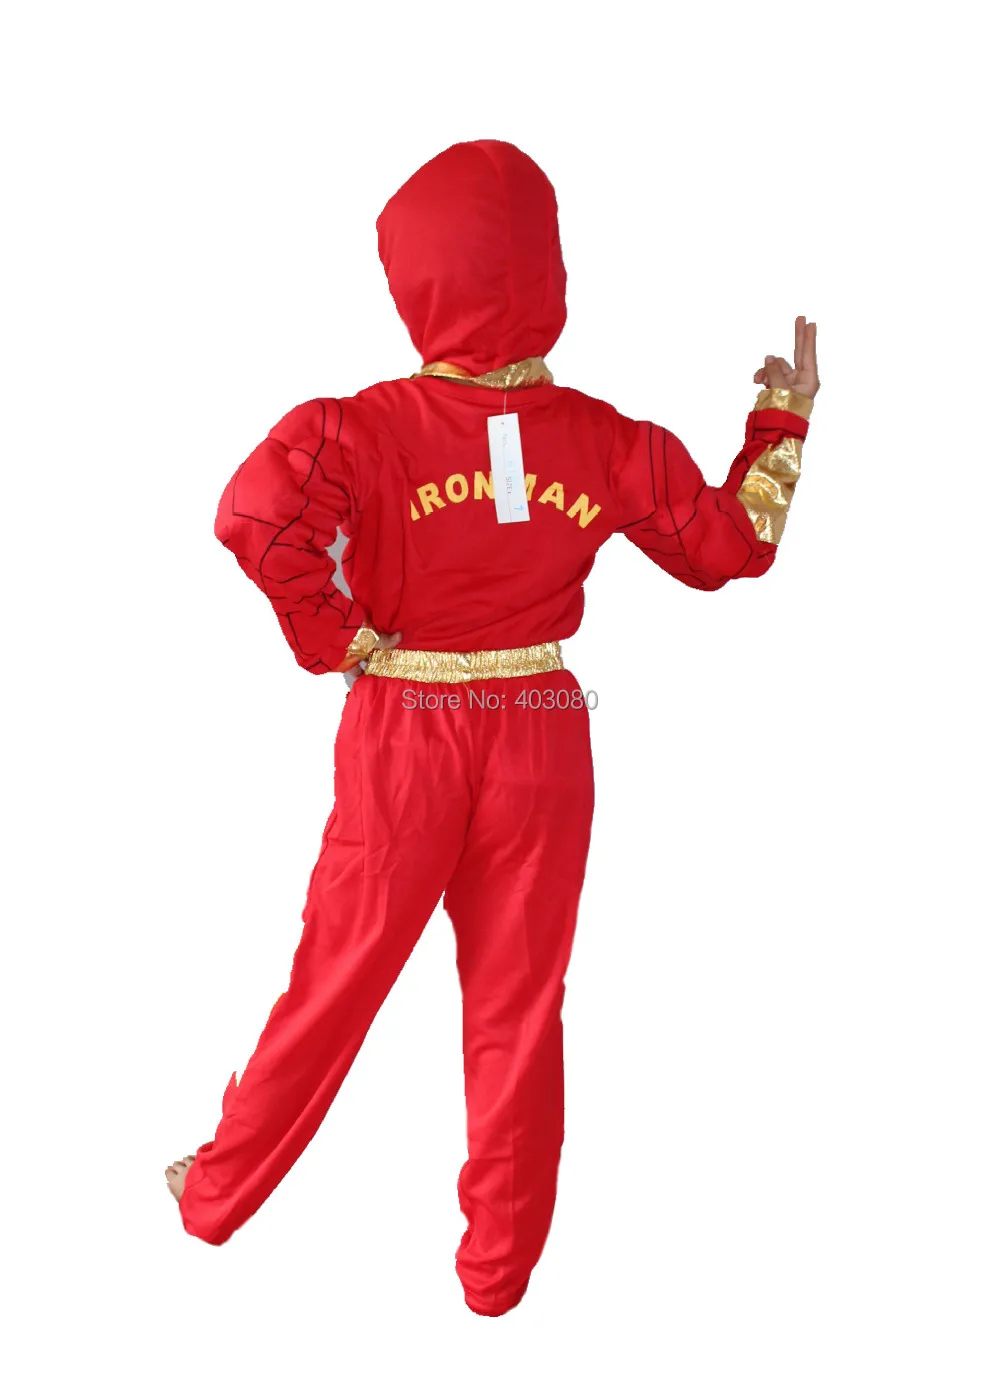 Хэллоуин вечерние костюмы Мышцы Мальчика модель одежды, малыш мышцы Железный человек Косплэй одежда,-Футболка с рукавами Размер: S-XXL